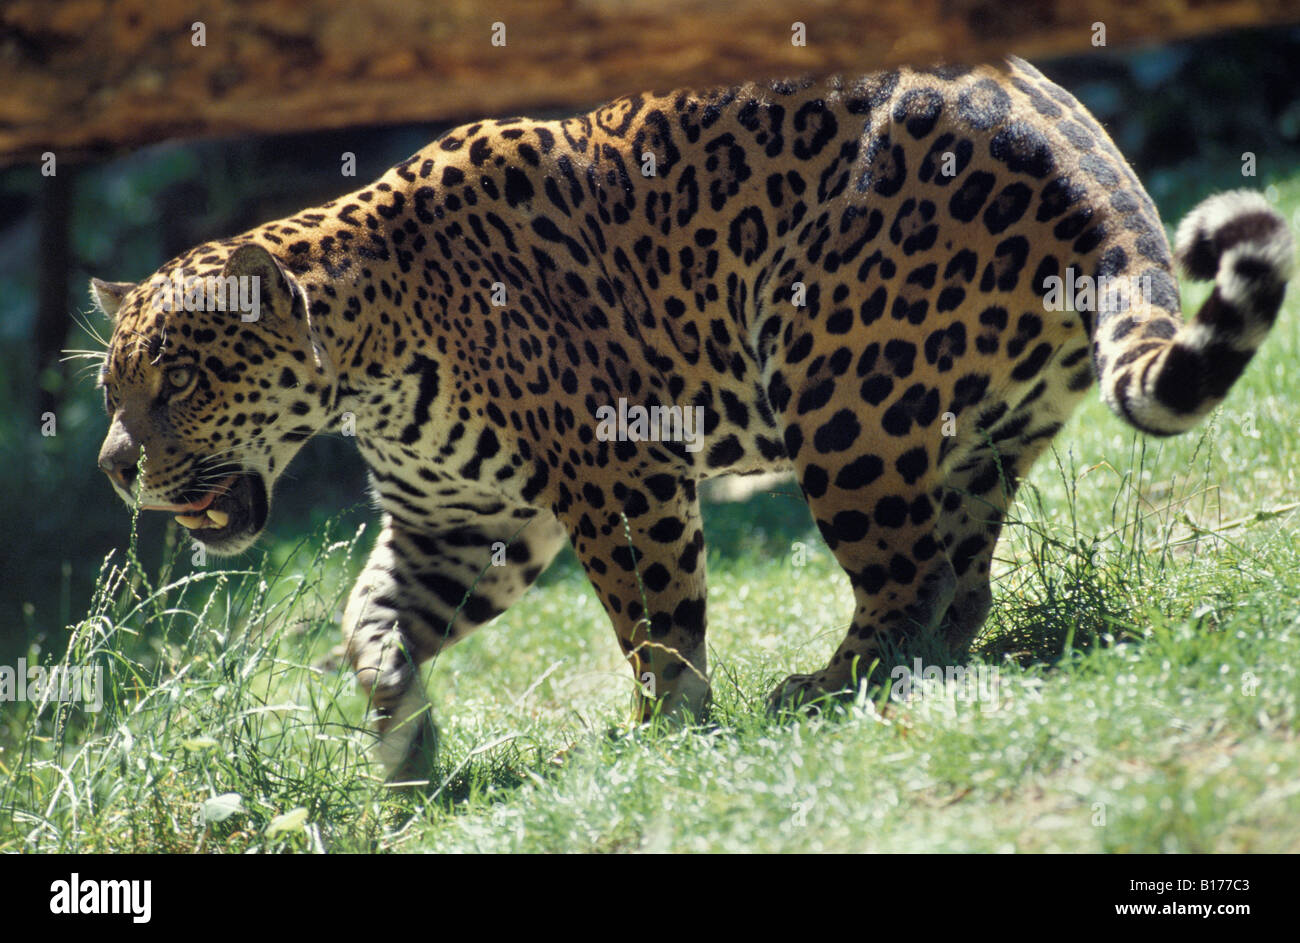 Jaguar Jaguar Panthera Onca im Regenwald Tiere große Katzen Carnivora Raubtiere Felidae Grosskatzen Jaguare Katzen Säugetiere Natu Stockfoto